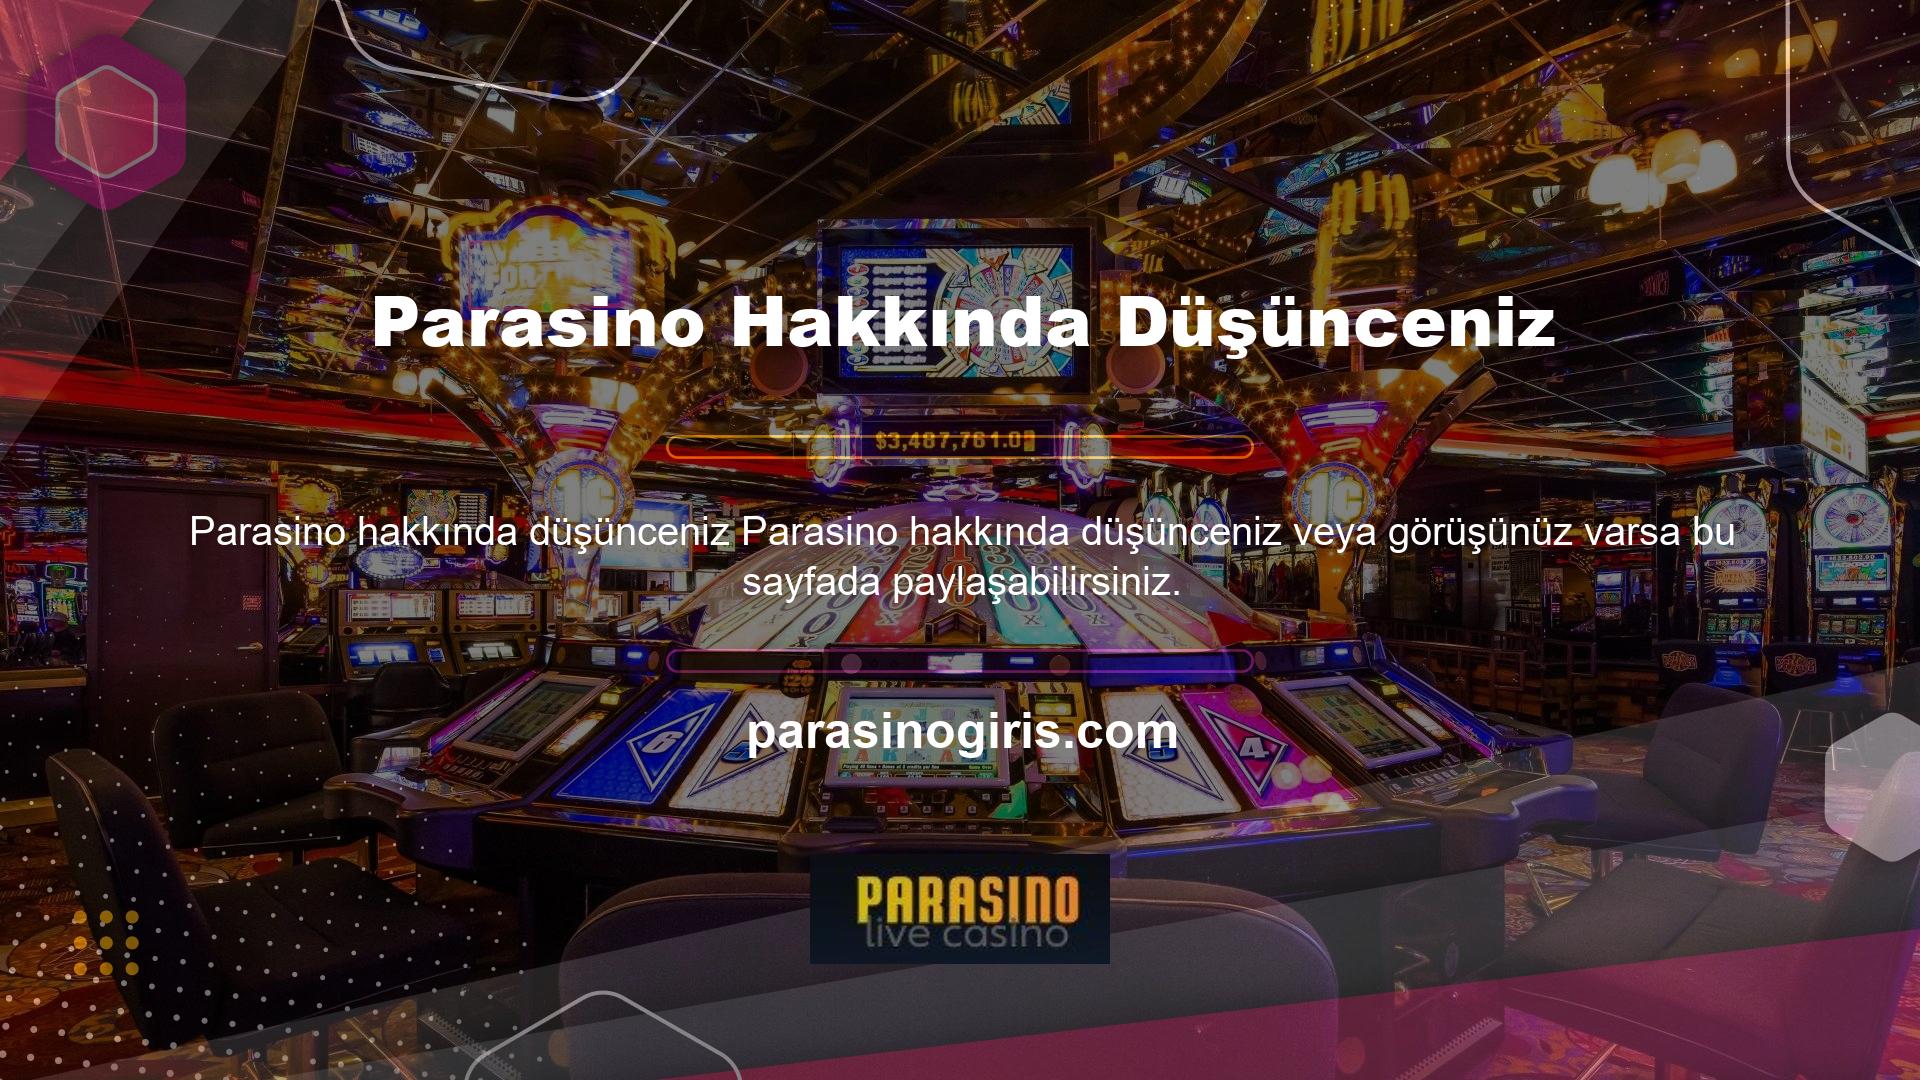 Türk online casino sitesi, canlı destek hattı aracılığıyla kullanıcılarına çeşitli güvenilir hizmetler sunmaktadır